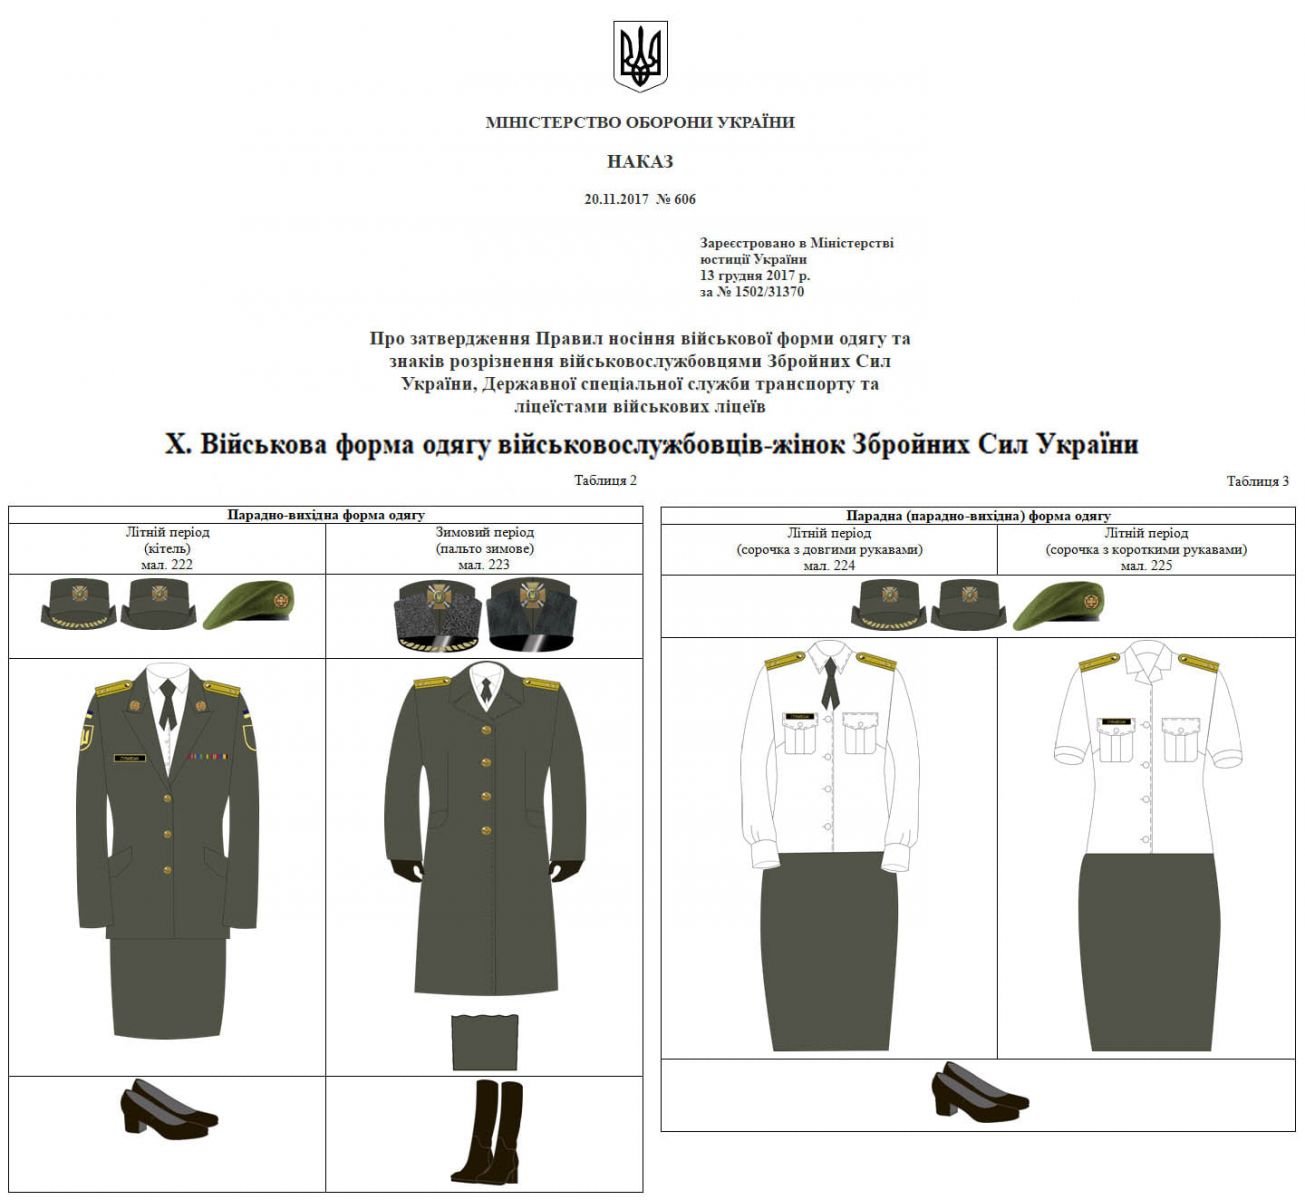 Требования к форме одежды военнослужащих ВСУ. Фото: МОУ